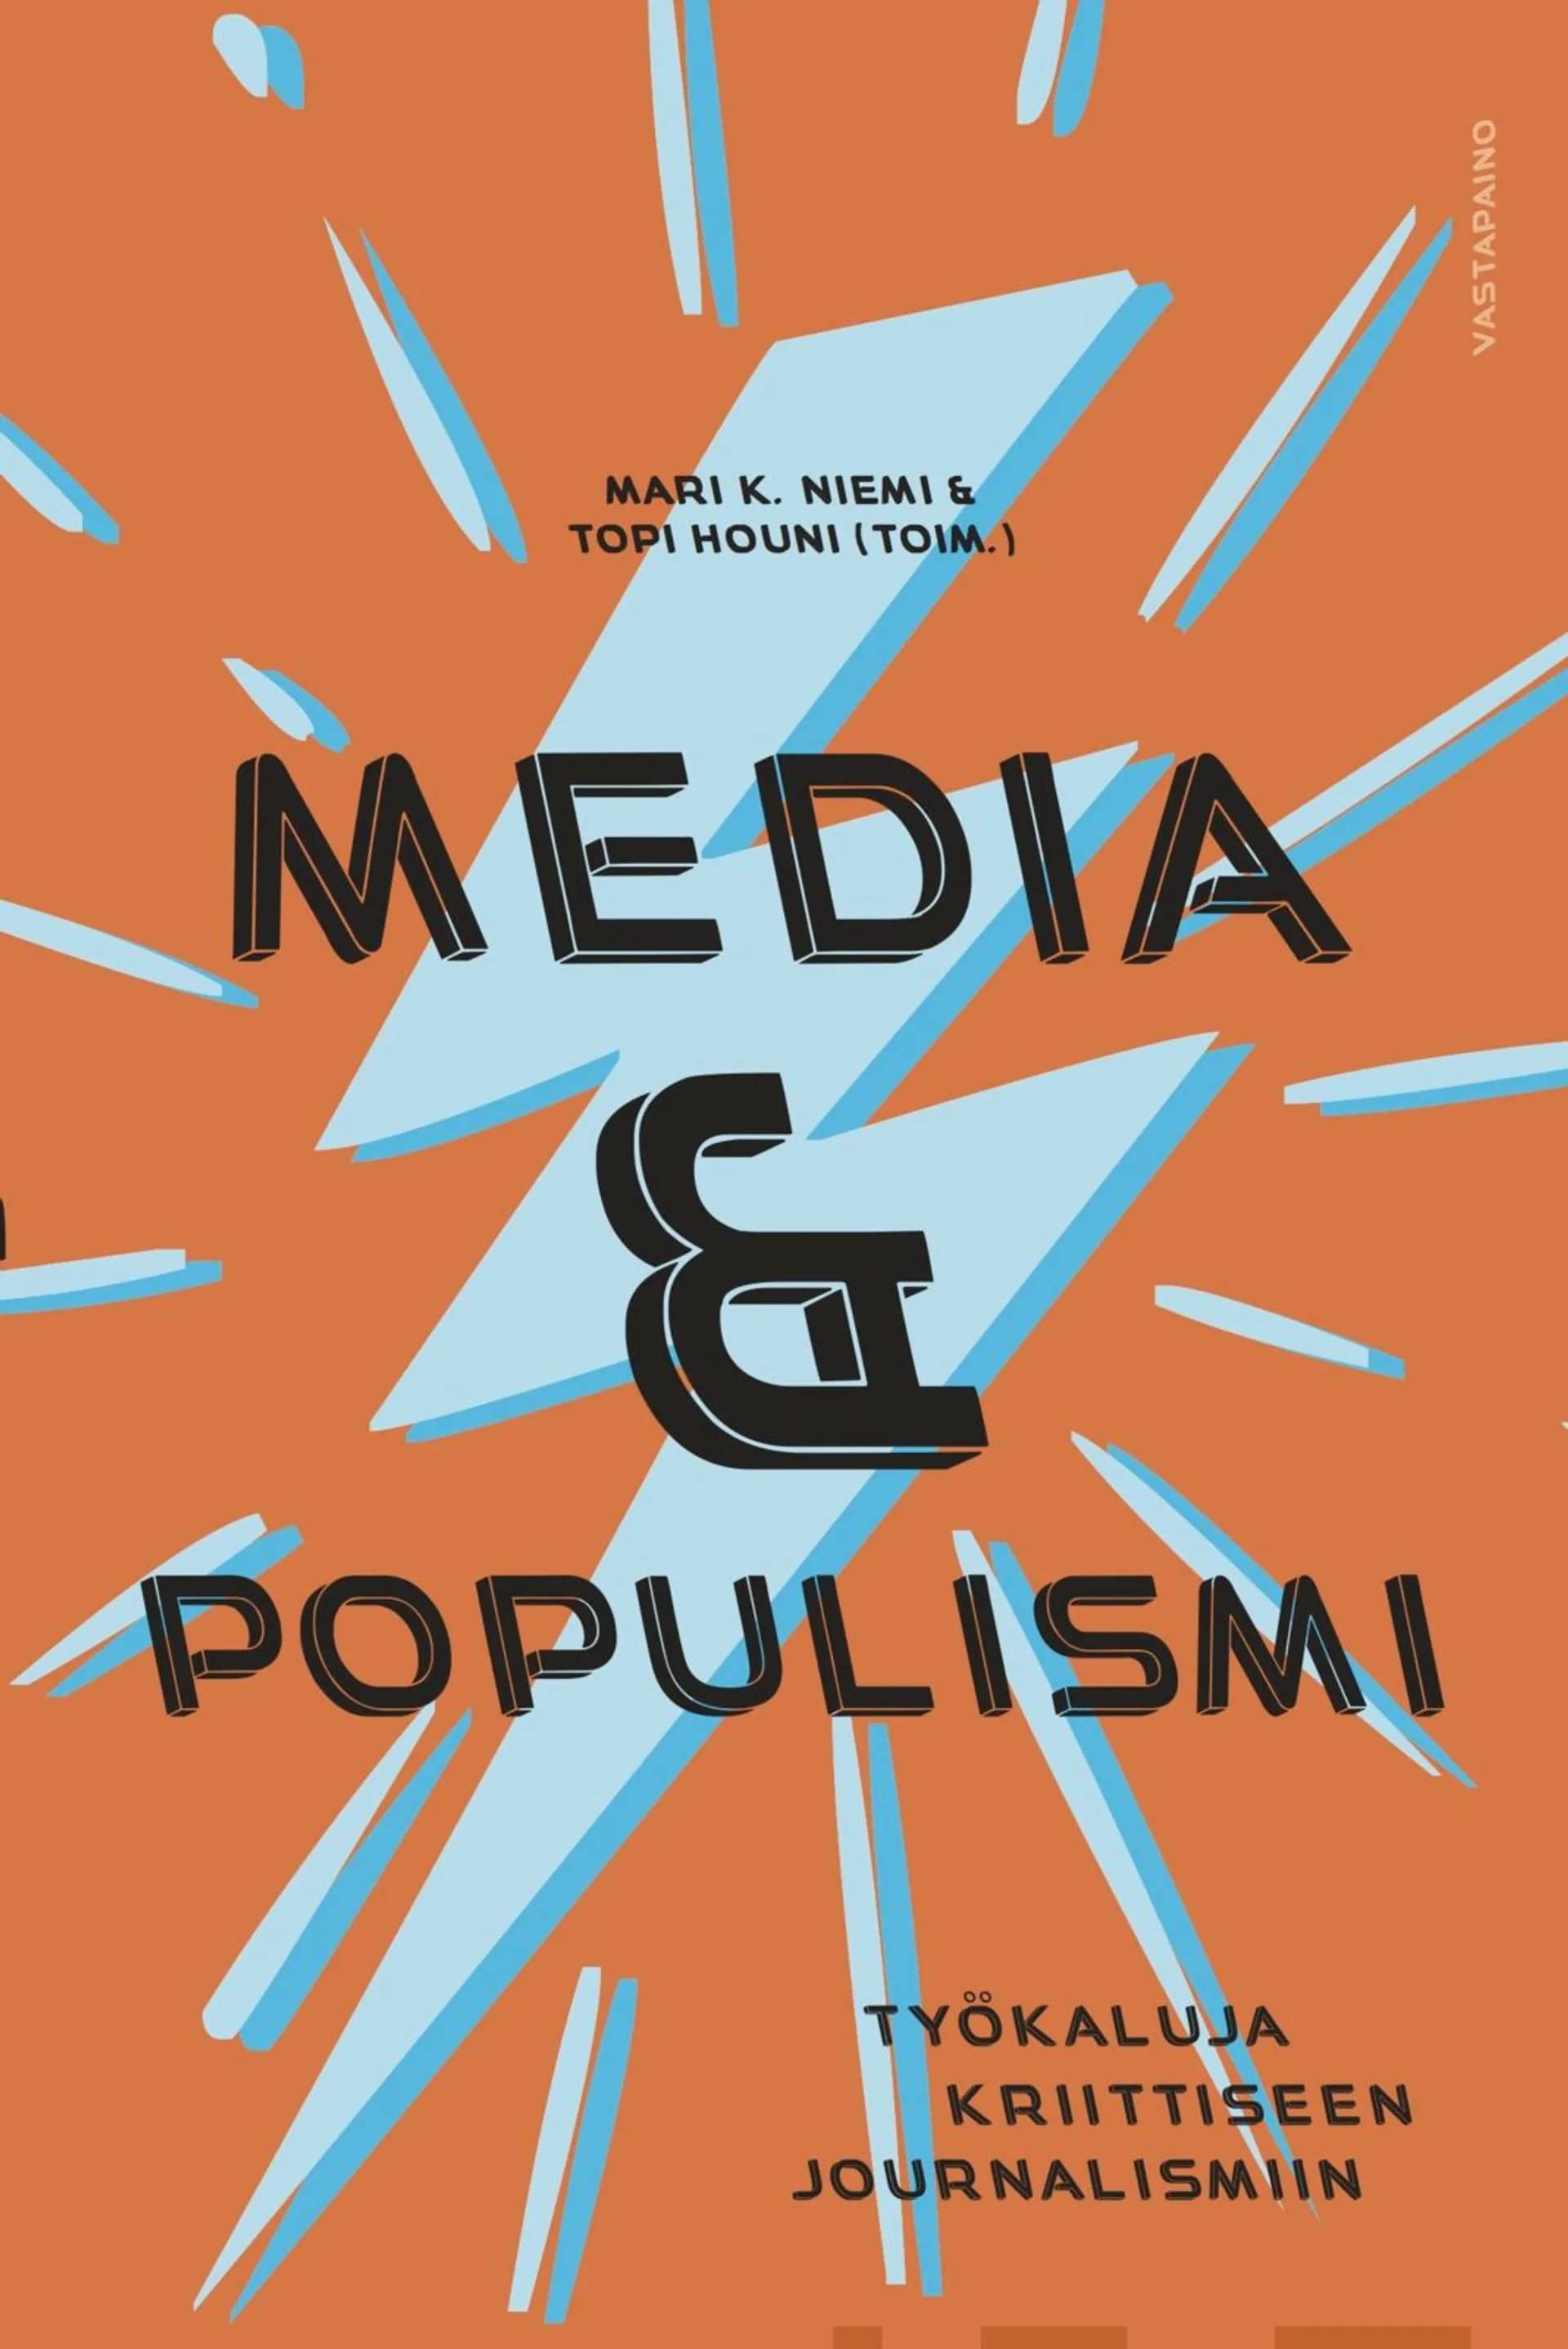 Media & populismi - Työkaluja kriittiseen journalismiin